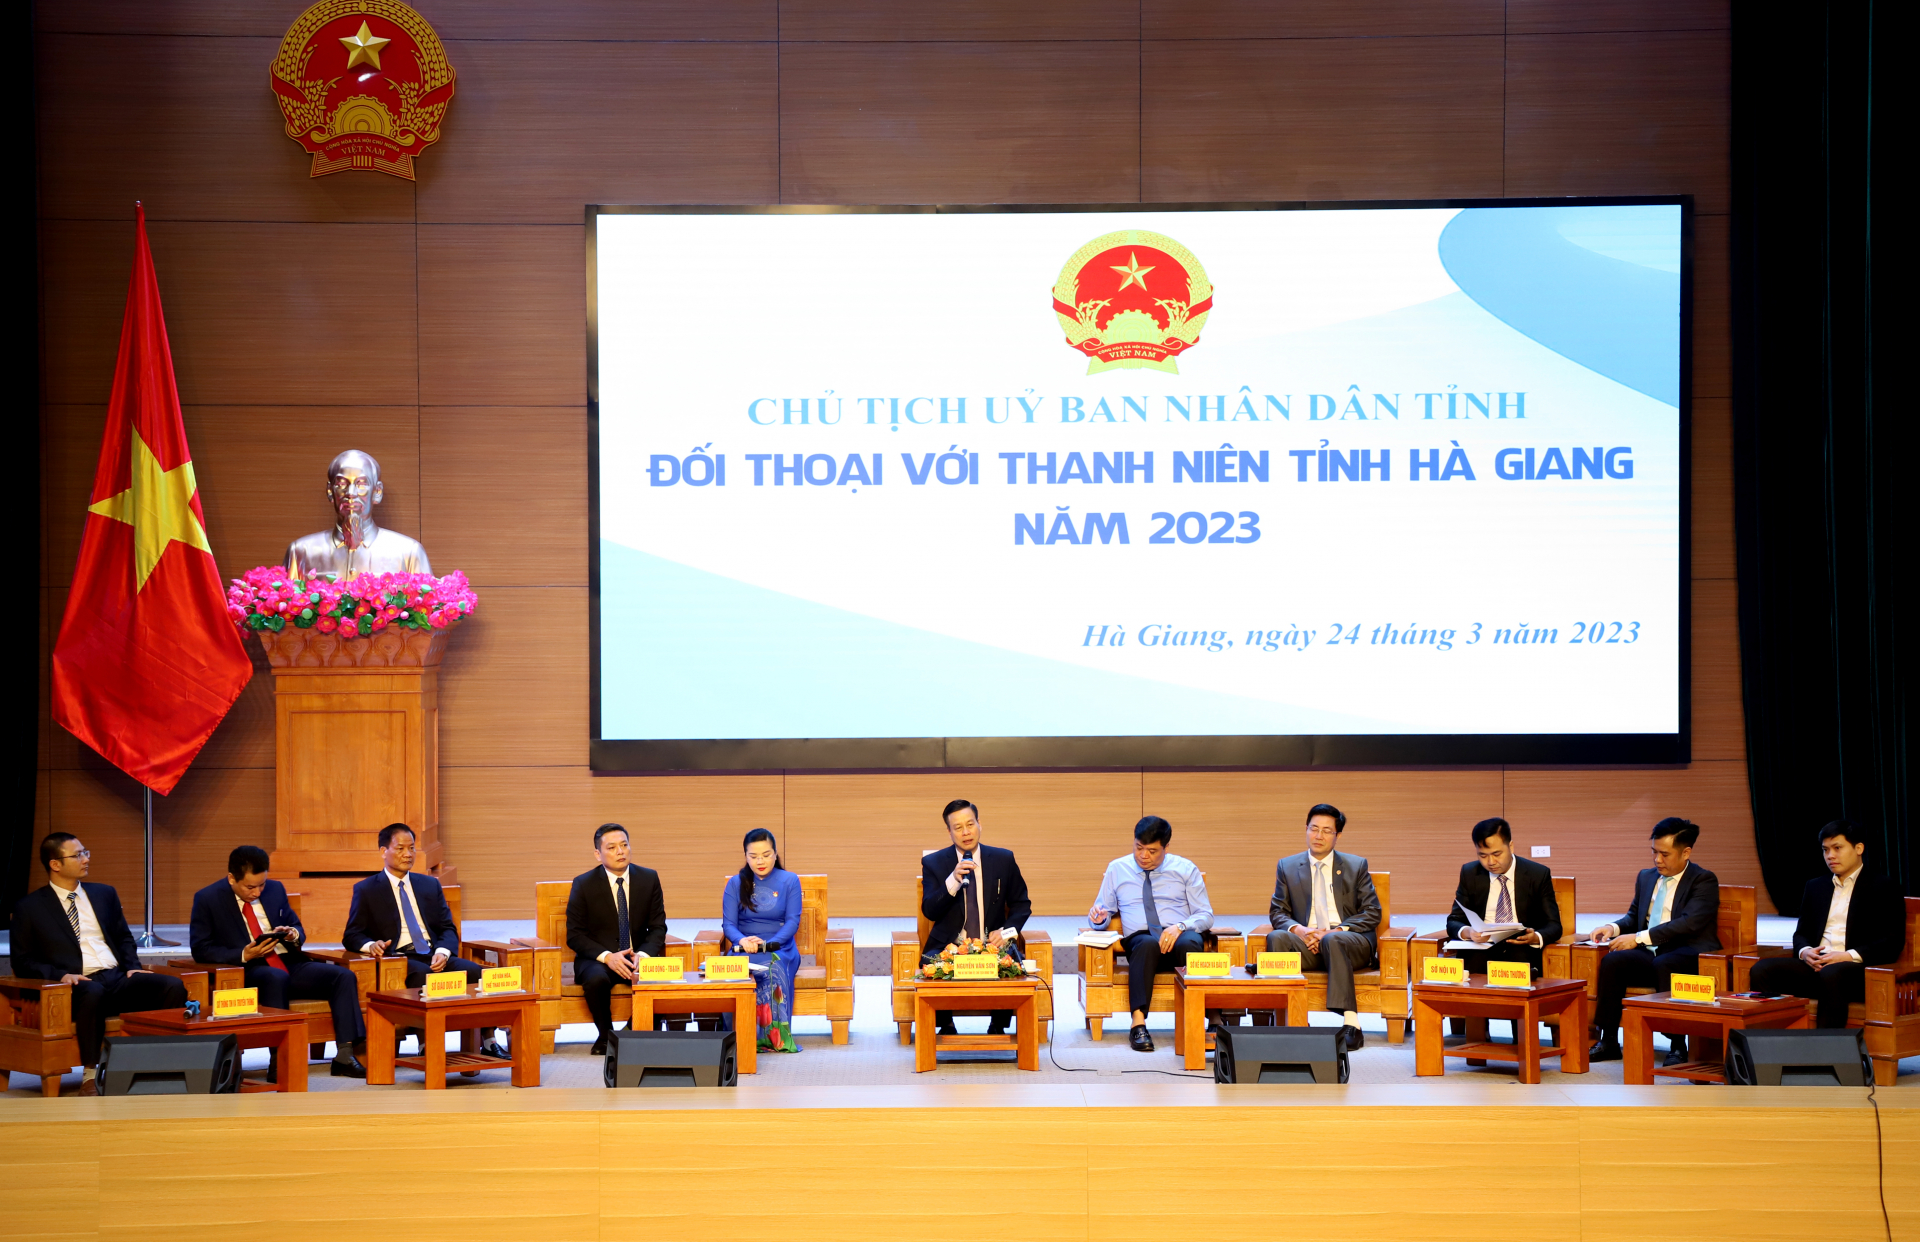 Chủ tịch UBND tỉnh Nguyễn Văn Sơn và các đại biểu tham dự buổi đối thoại.
